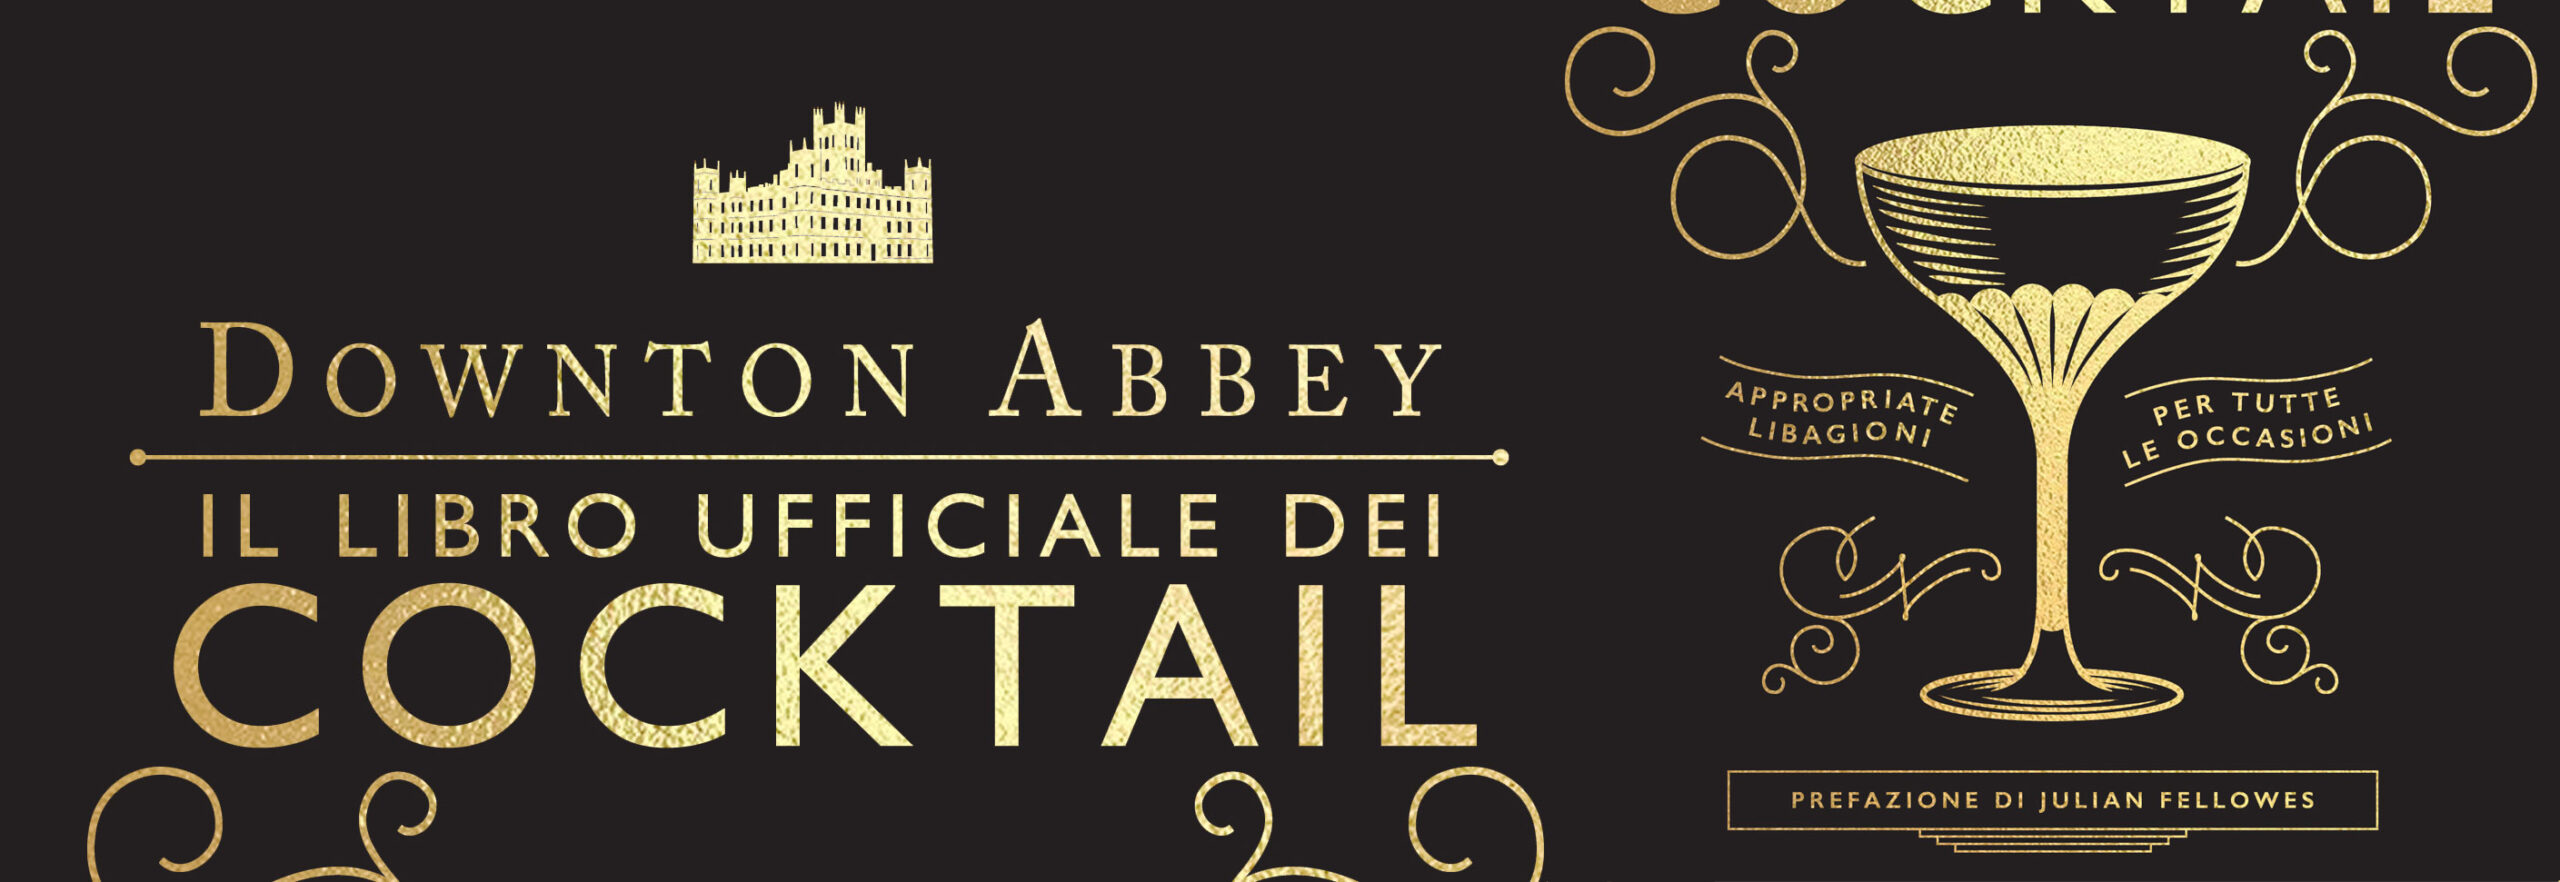 Il Libro ufficiale dei cocktail di Downton Abbey